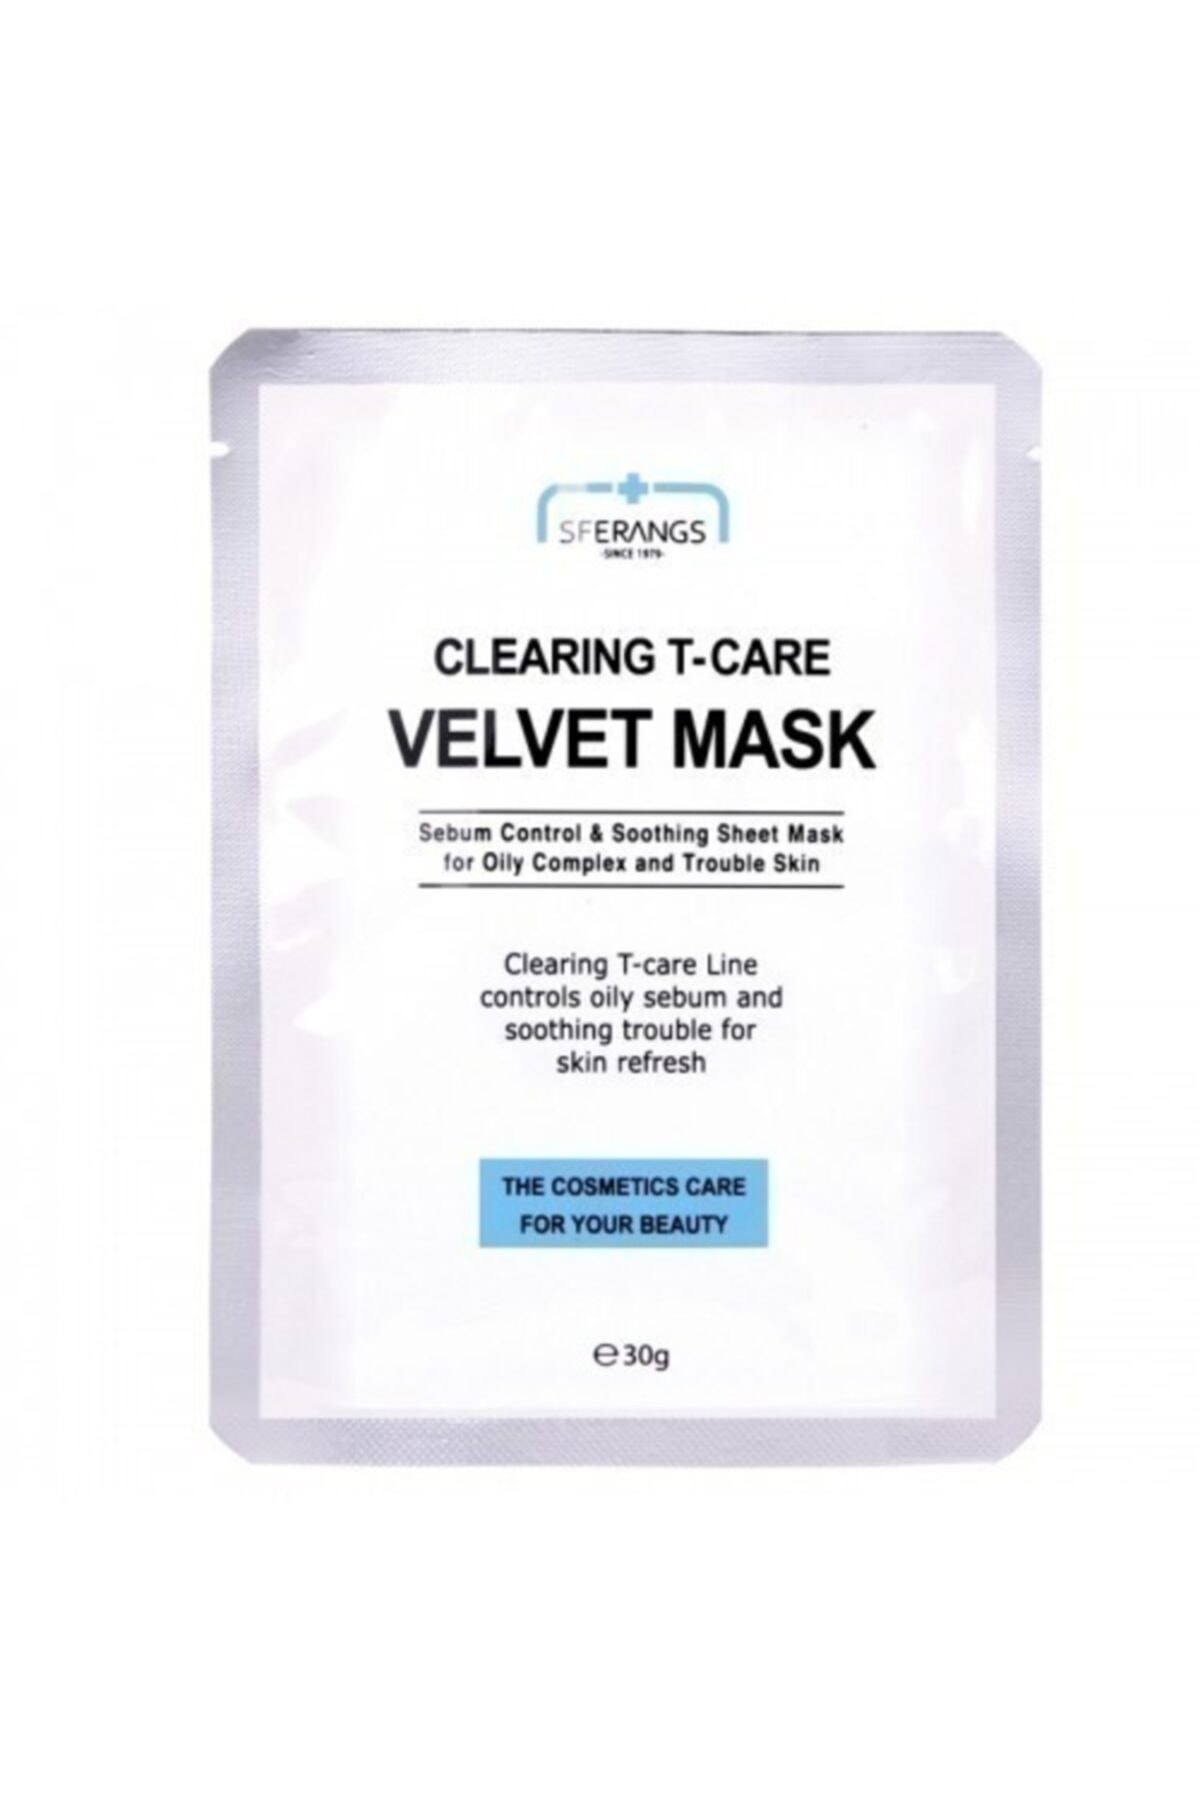 Sferangs Clearing T-care Velvet Mask 30g X 5